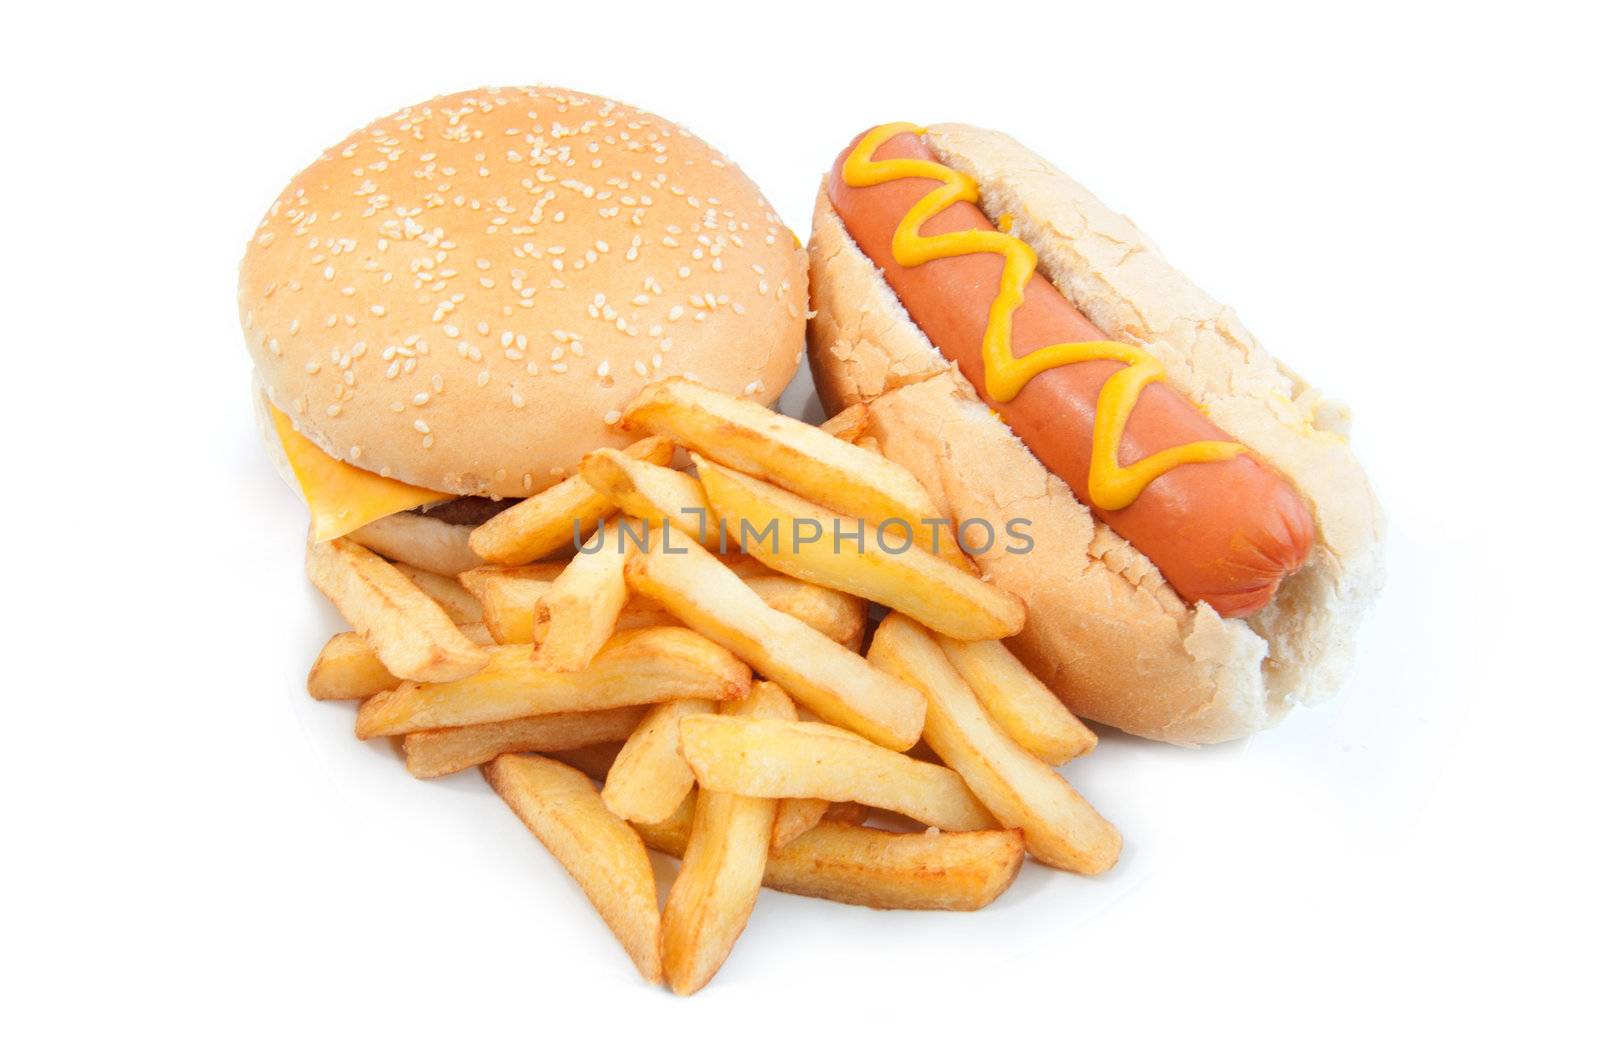 Hot dog with mustard and a cheeseburger